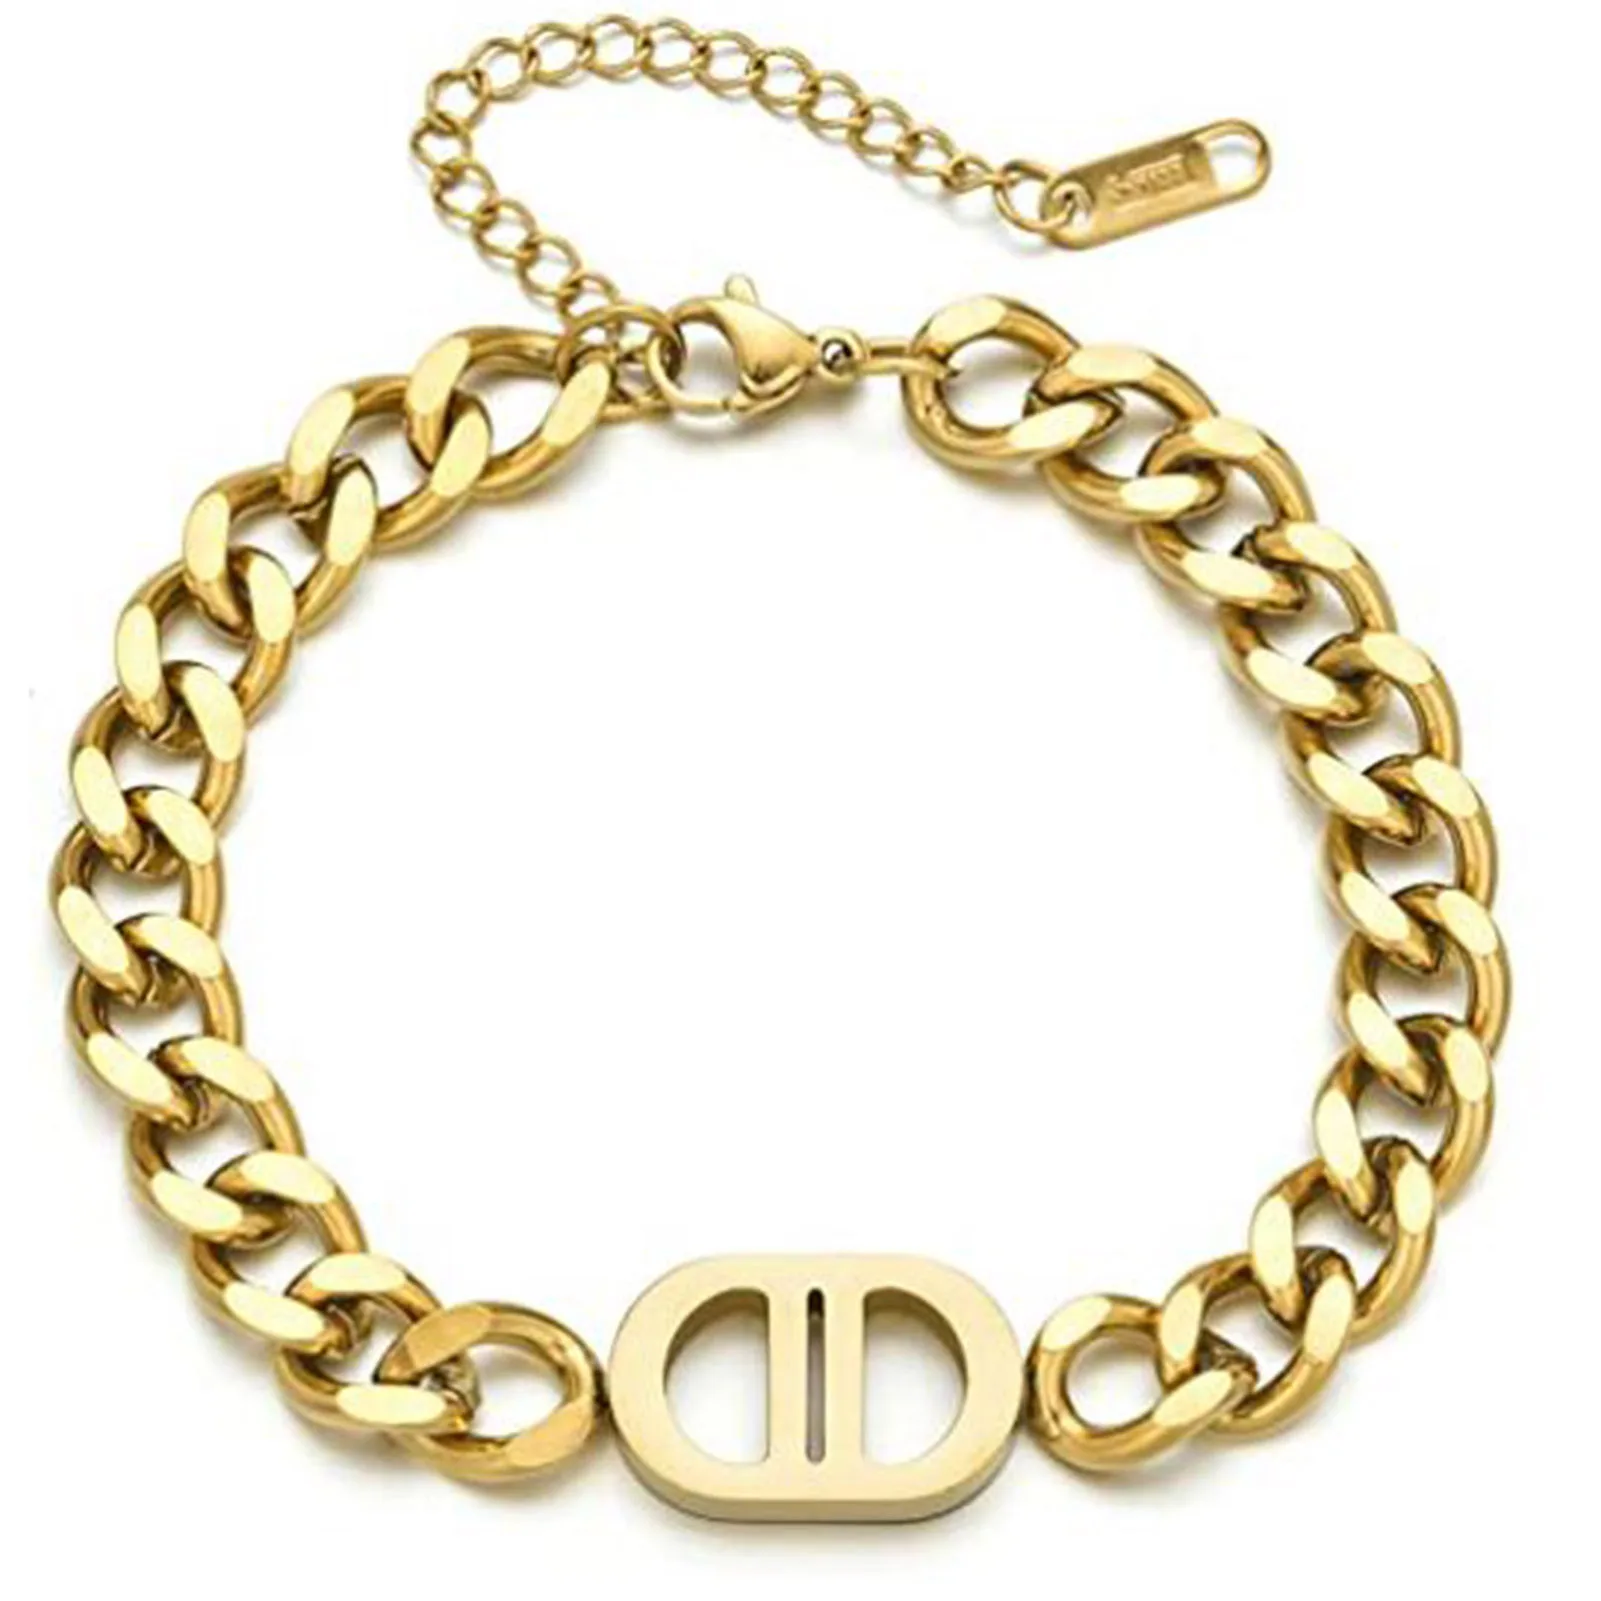 

Массивный браслет Ytrkiasy для женщин и девушек, браслет из нержавеющей стали с кубинскими звеньями шириной 8 мм и надписью D, покрытый 18-каратным золотом